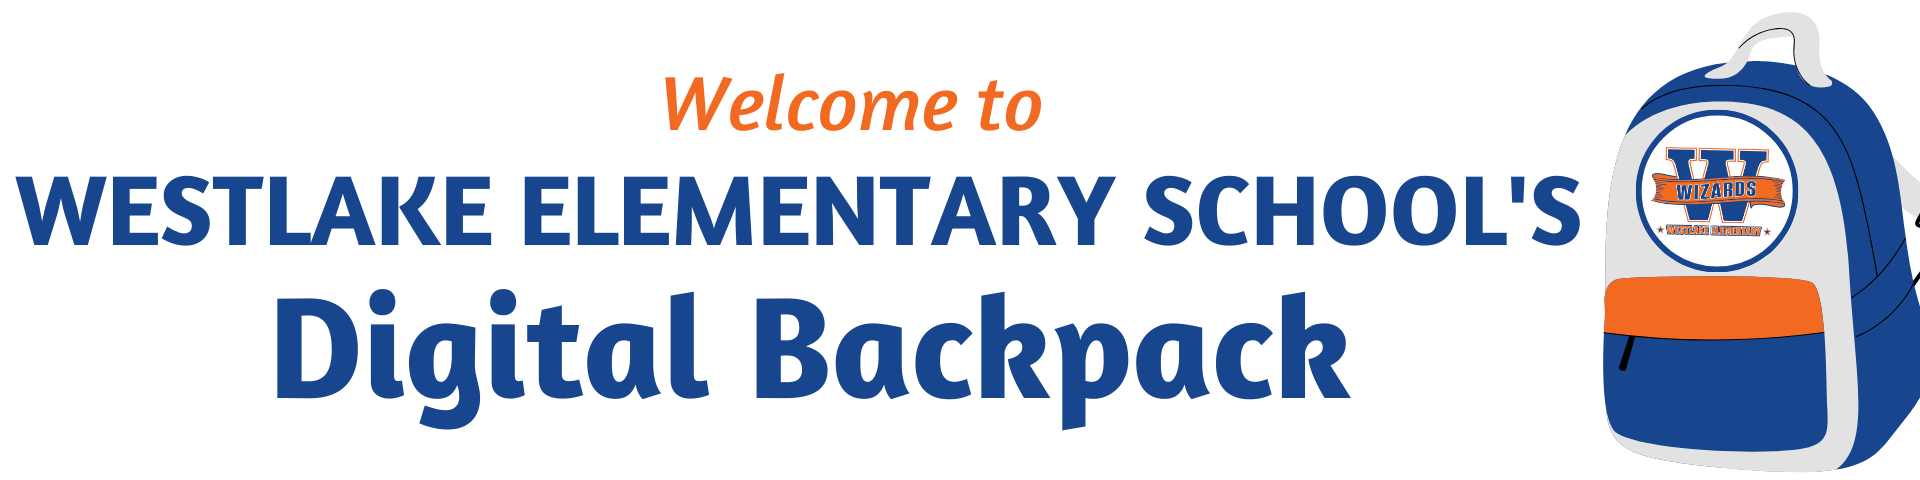 Welcome to Westlake Elementary School's Digital Backpack